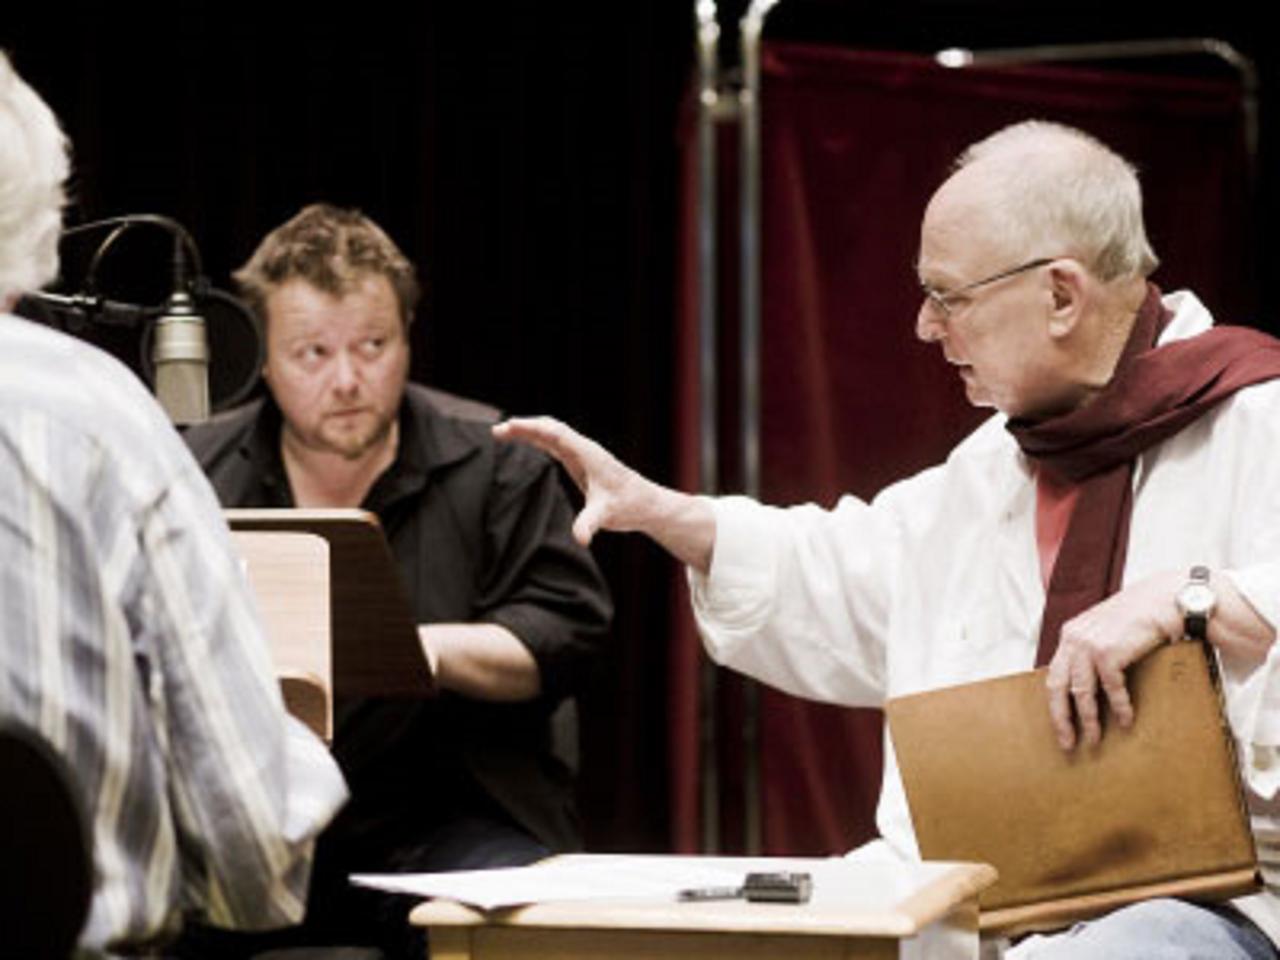 Darsteller Martin Engler und Regisseur Jörg Jannings (v.l.) bei der Aufnahme von "Souterrain".